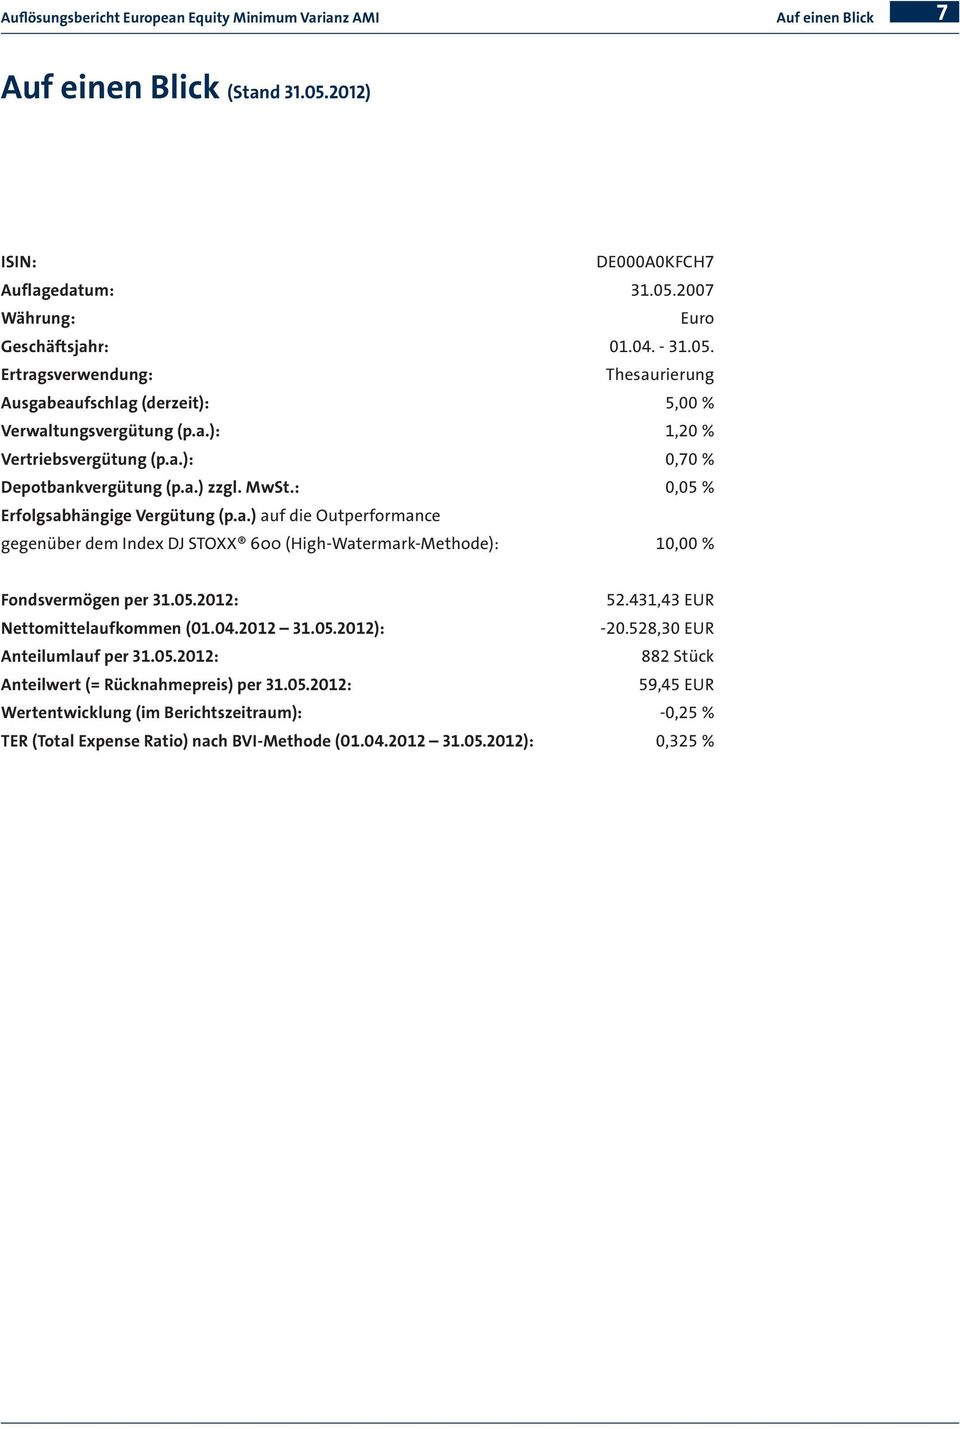 05.2012: 52.431,43 EUR Nettomittelaufkommen (01.04.2012 31.05.2012): -20.528,30 EUR Anteilumlauf per 31.05.2012: 882 Stück Anteilwert (= Rücknahmepreis) per 31.05.2012: 59,45 EUR Wertentwicklung (im Berichtszeitraum): -0,25 % TER (Total Expense Ratio) nach BVI-Methode (01.